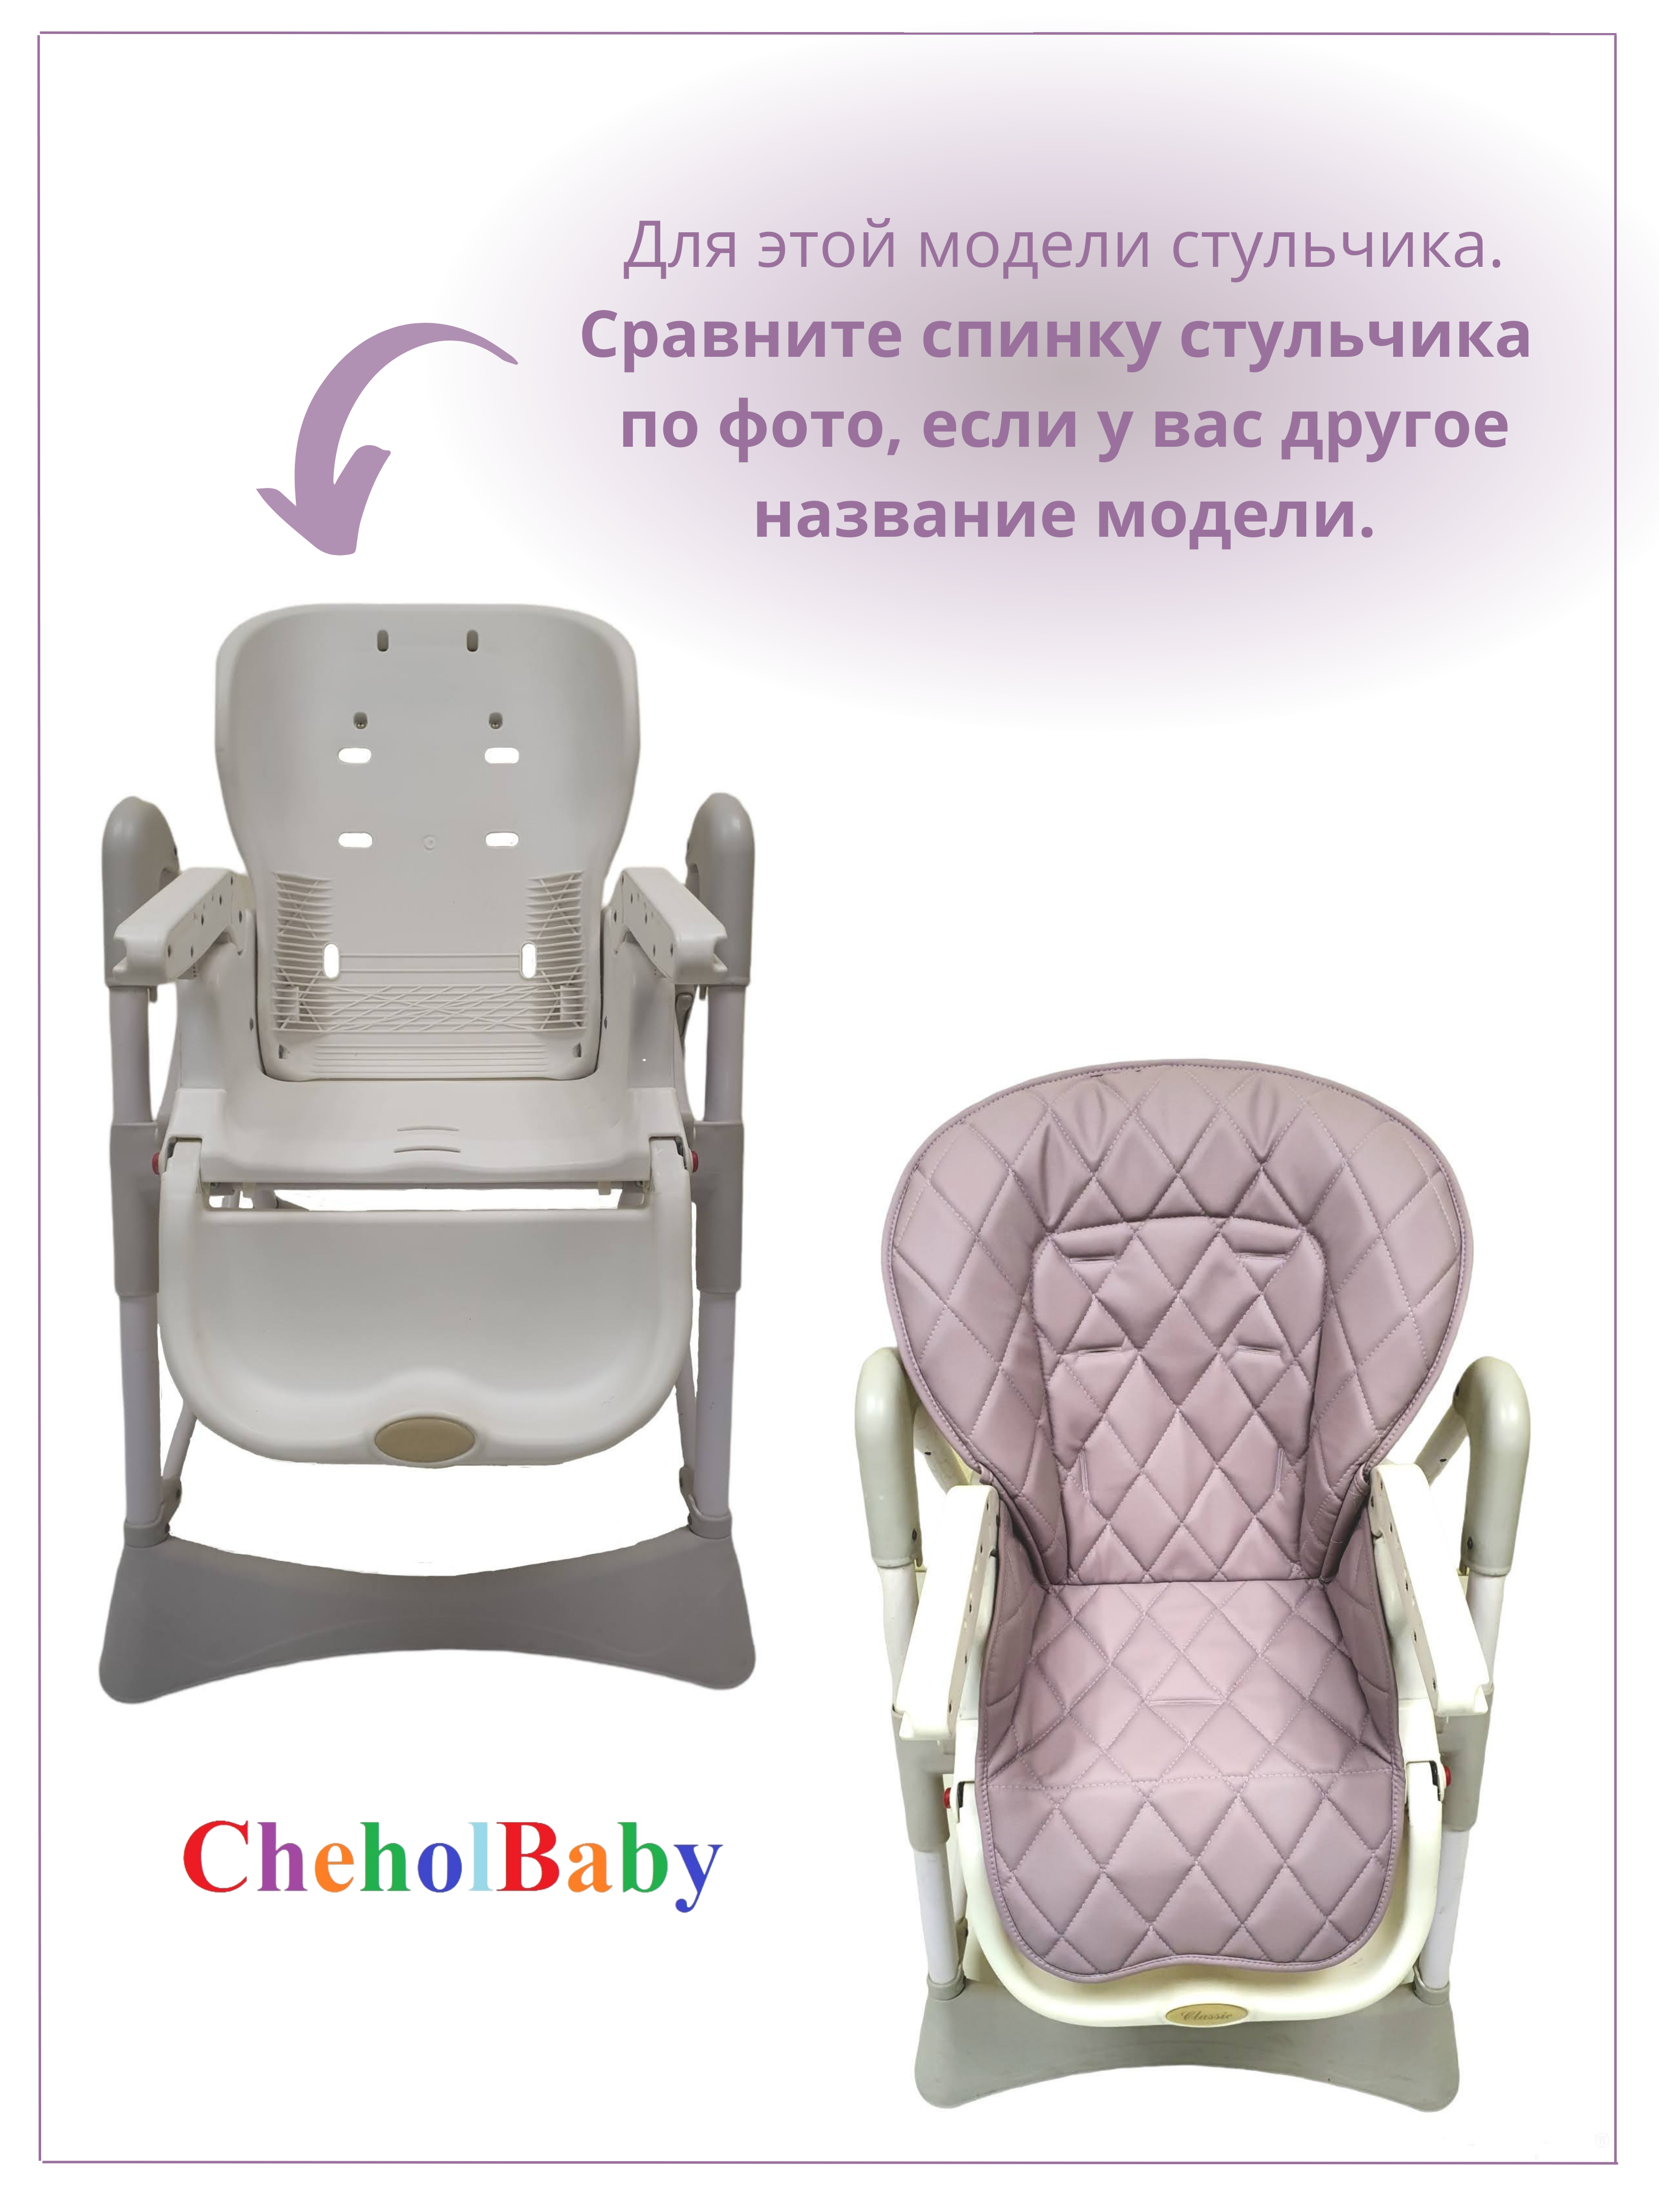 Чехол на детский стульчик CheholBaby на детский стульчик для кормления - фото 3